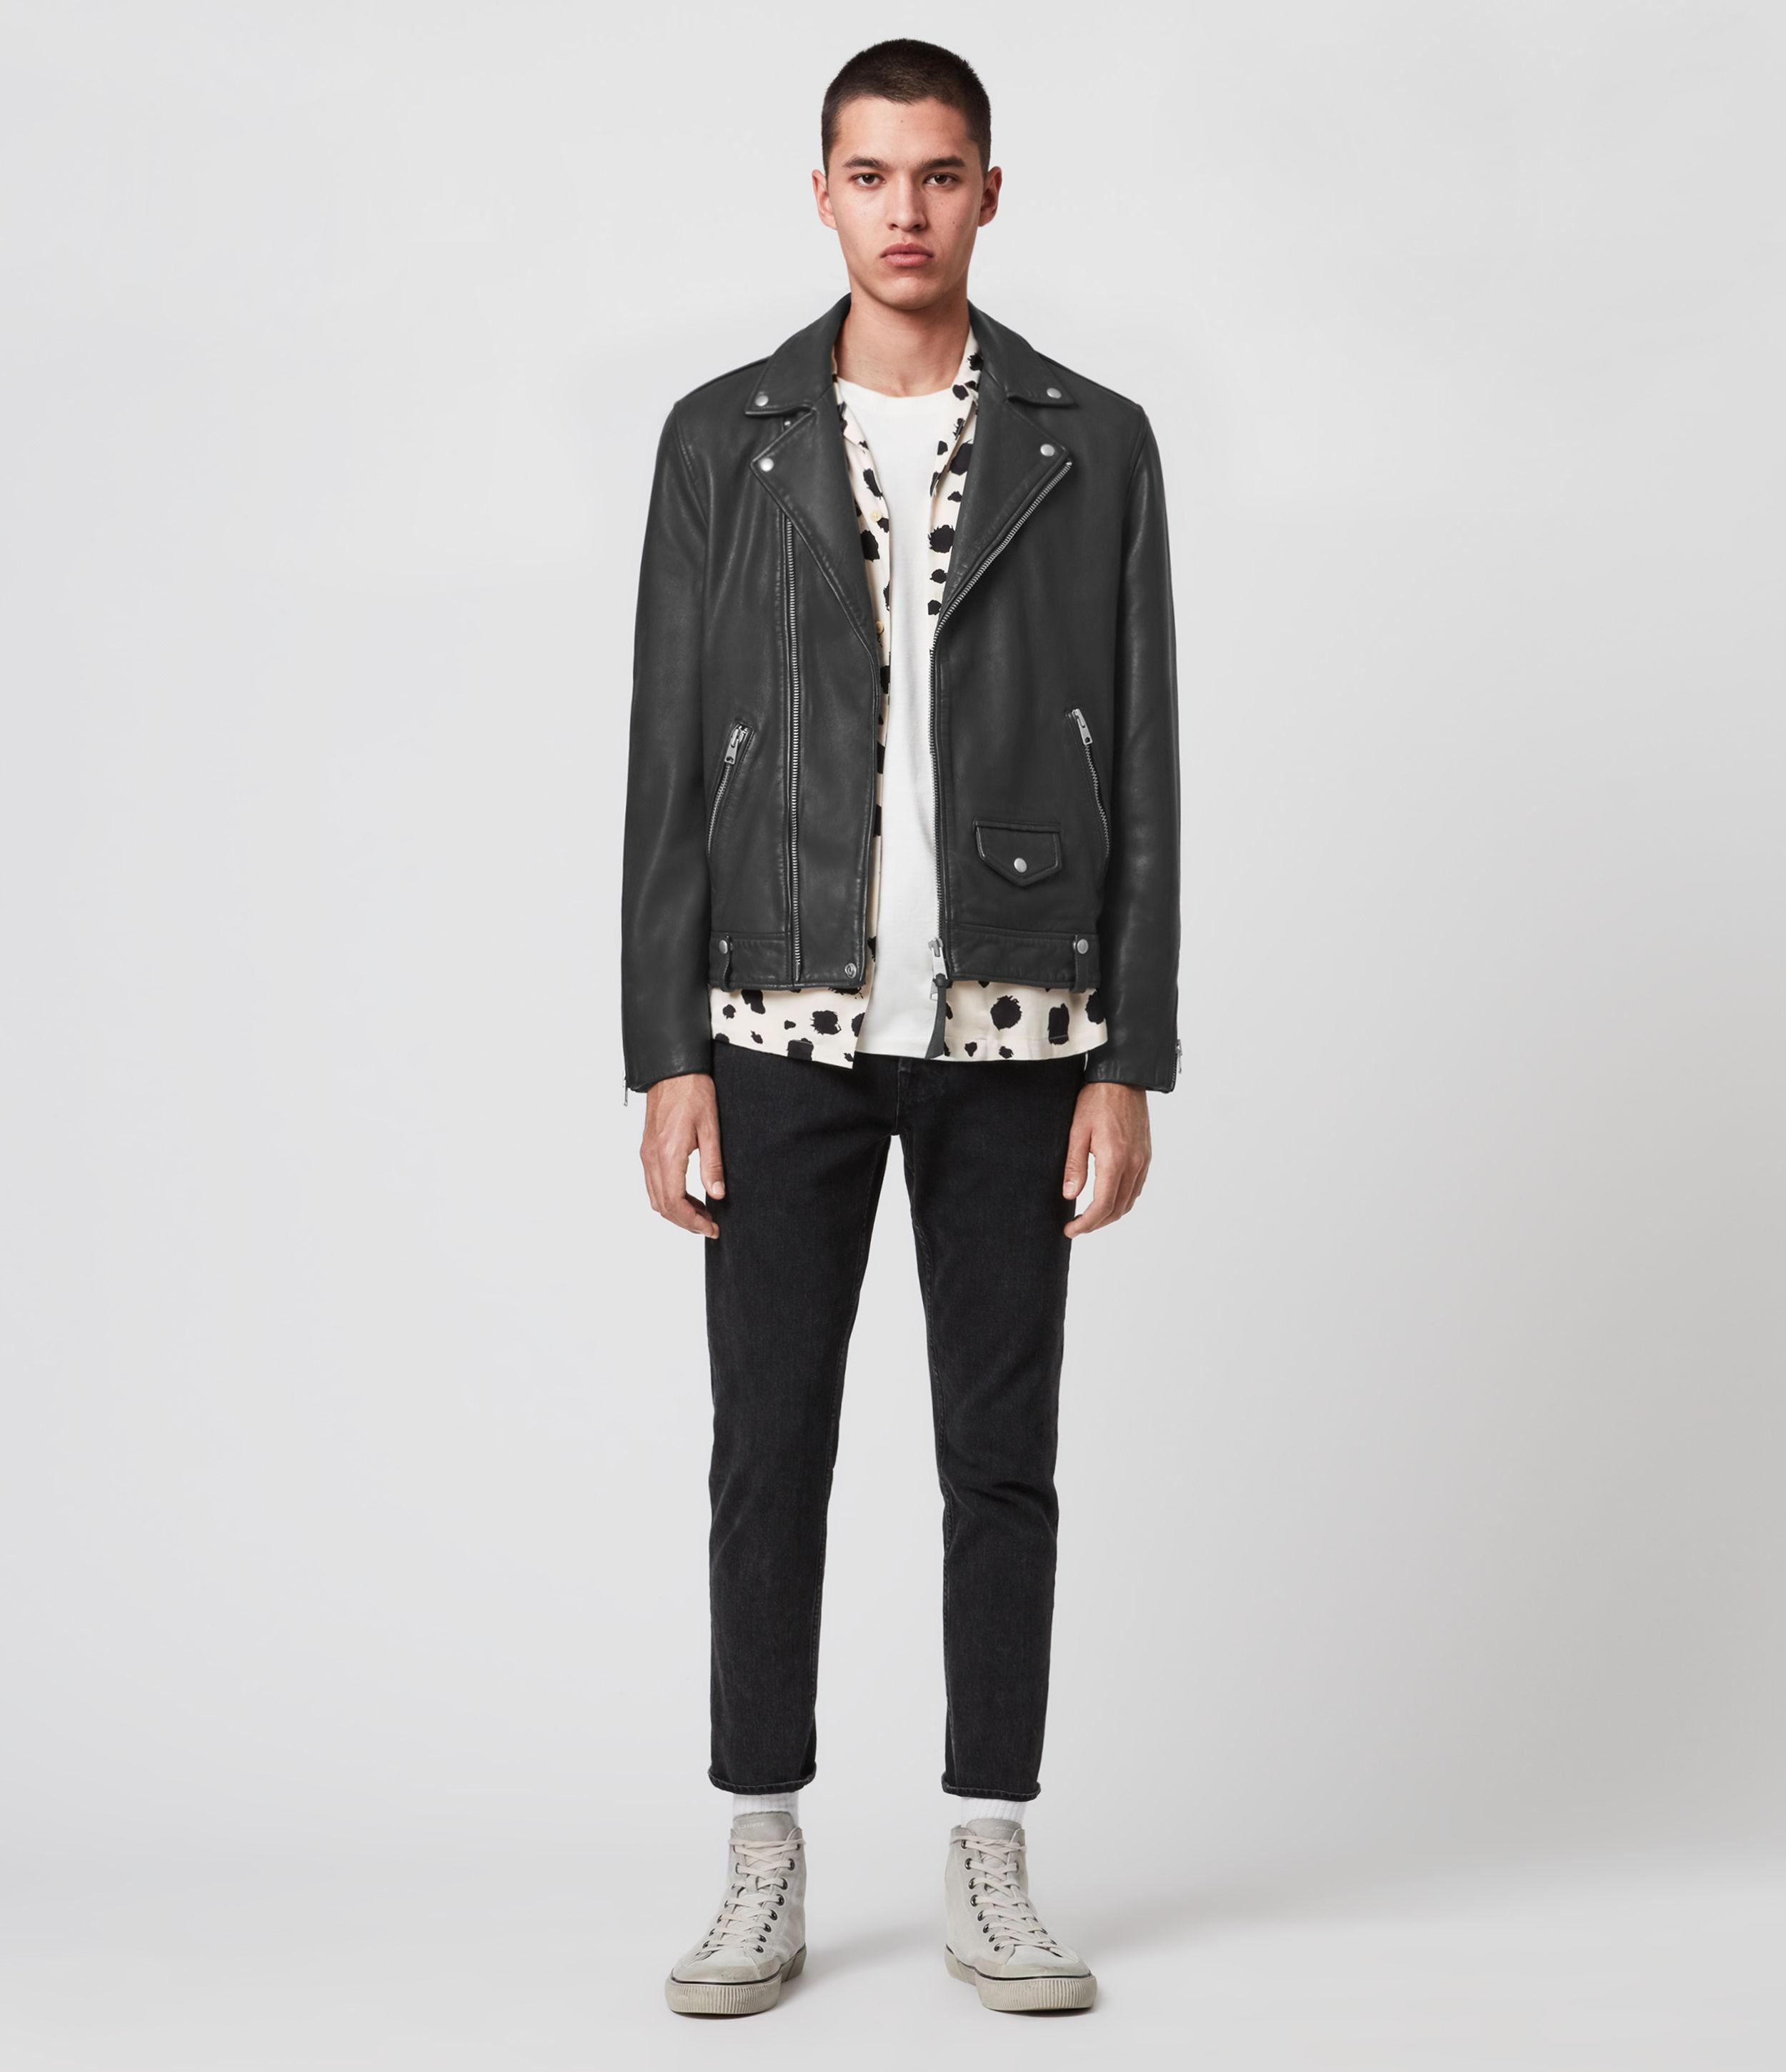 AllSaints Milo Leather Biker Jacket in Grey (Gray) for Men - Lyst